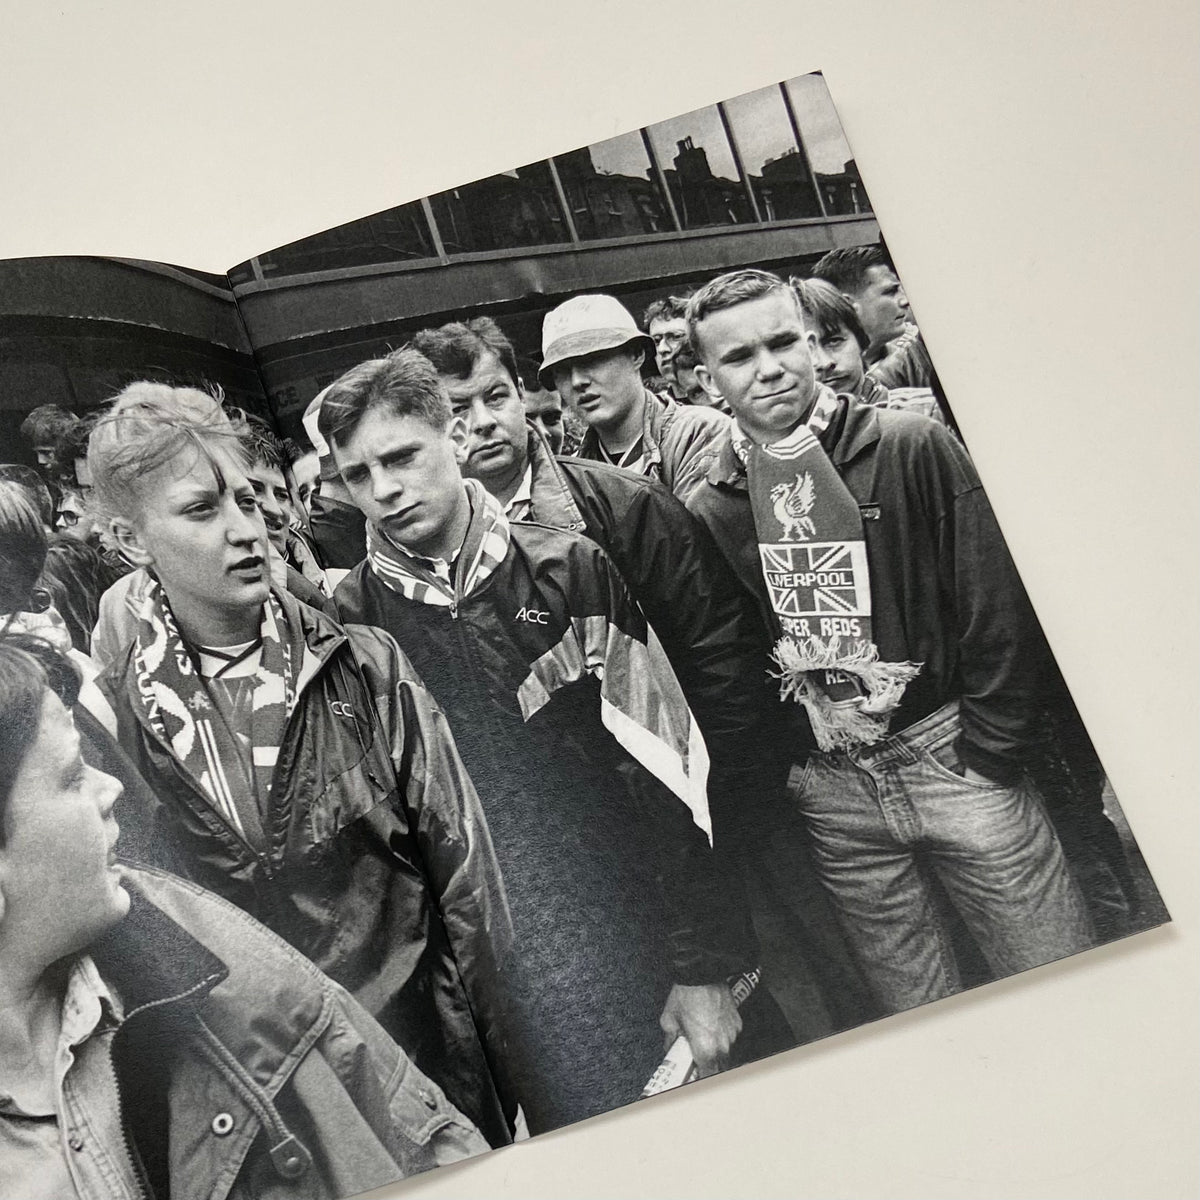 Football Fans 1991 - Richard Davis